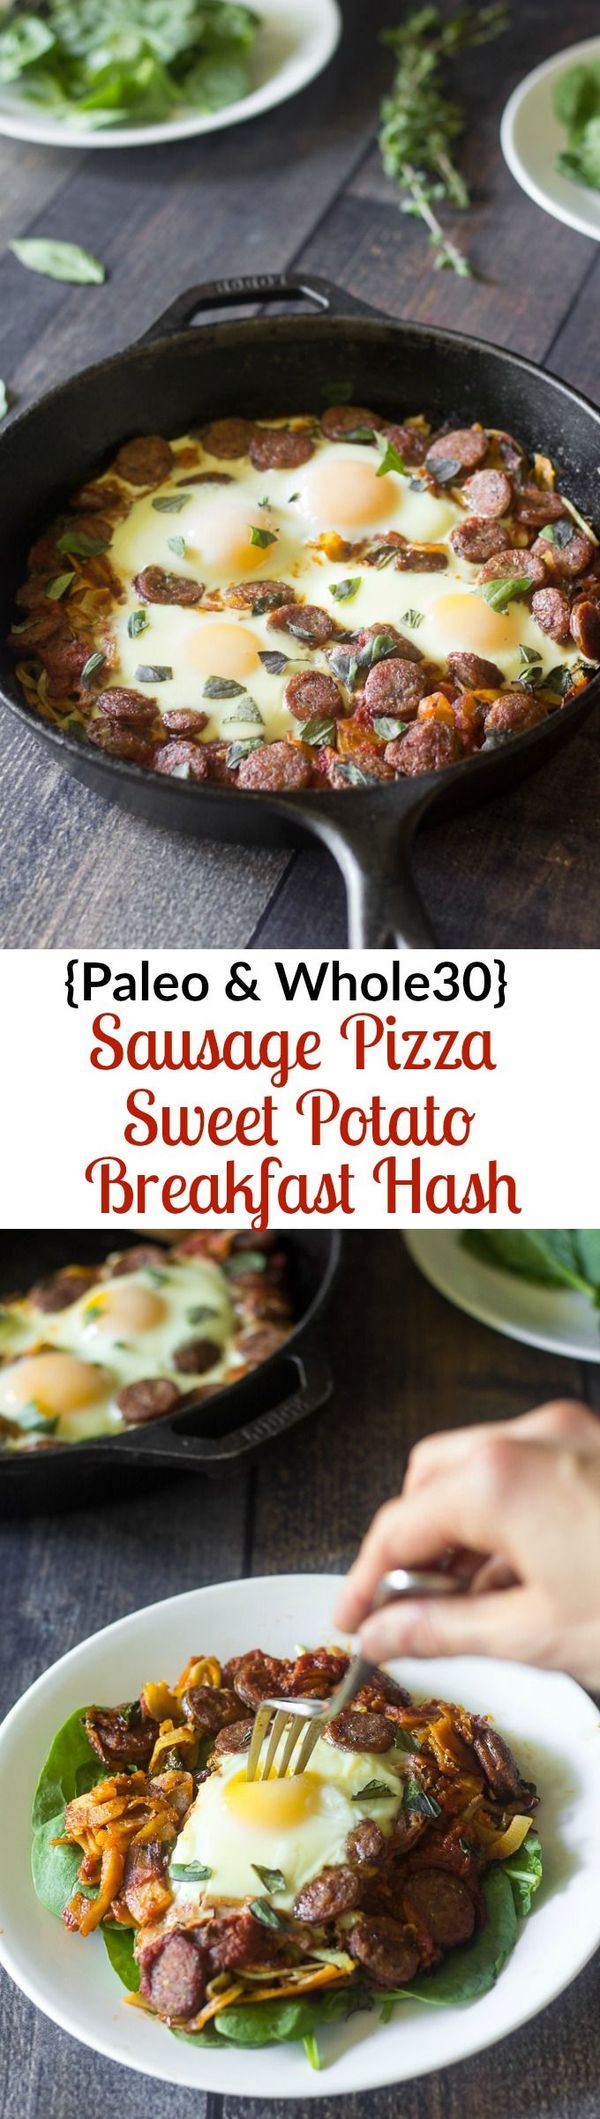 Sausage Pizza Sweet Potato Breakfast Hash (Paleo & Whole30